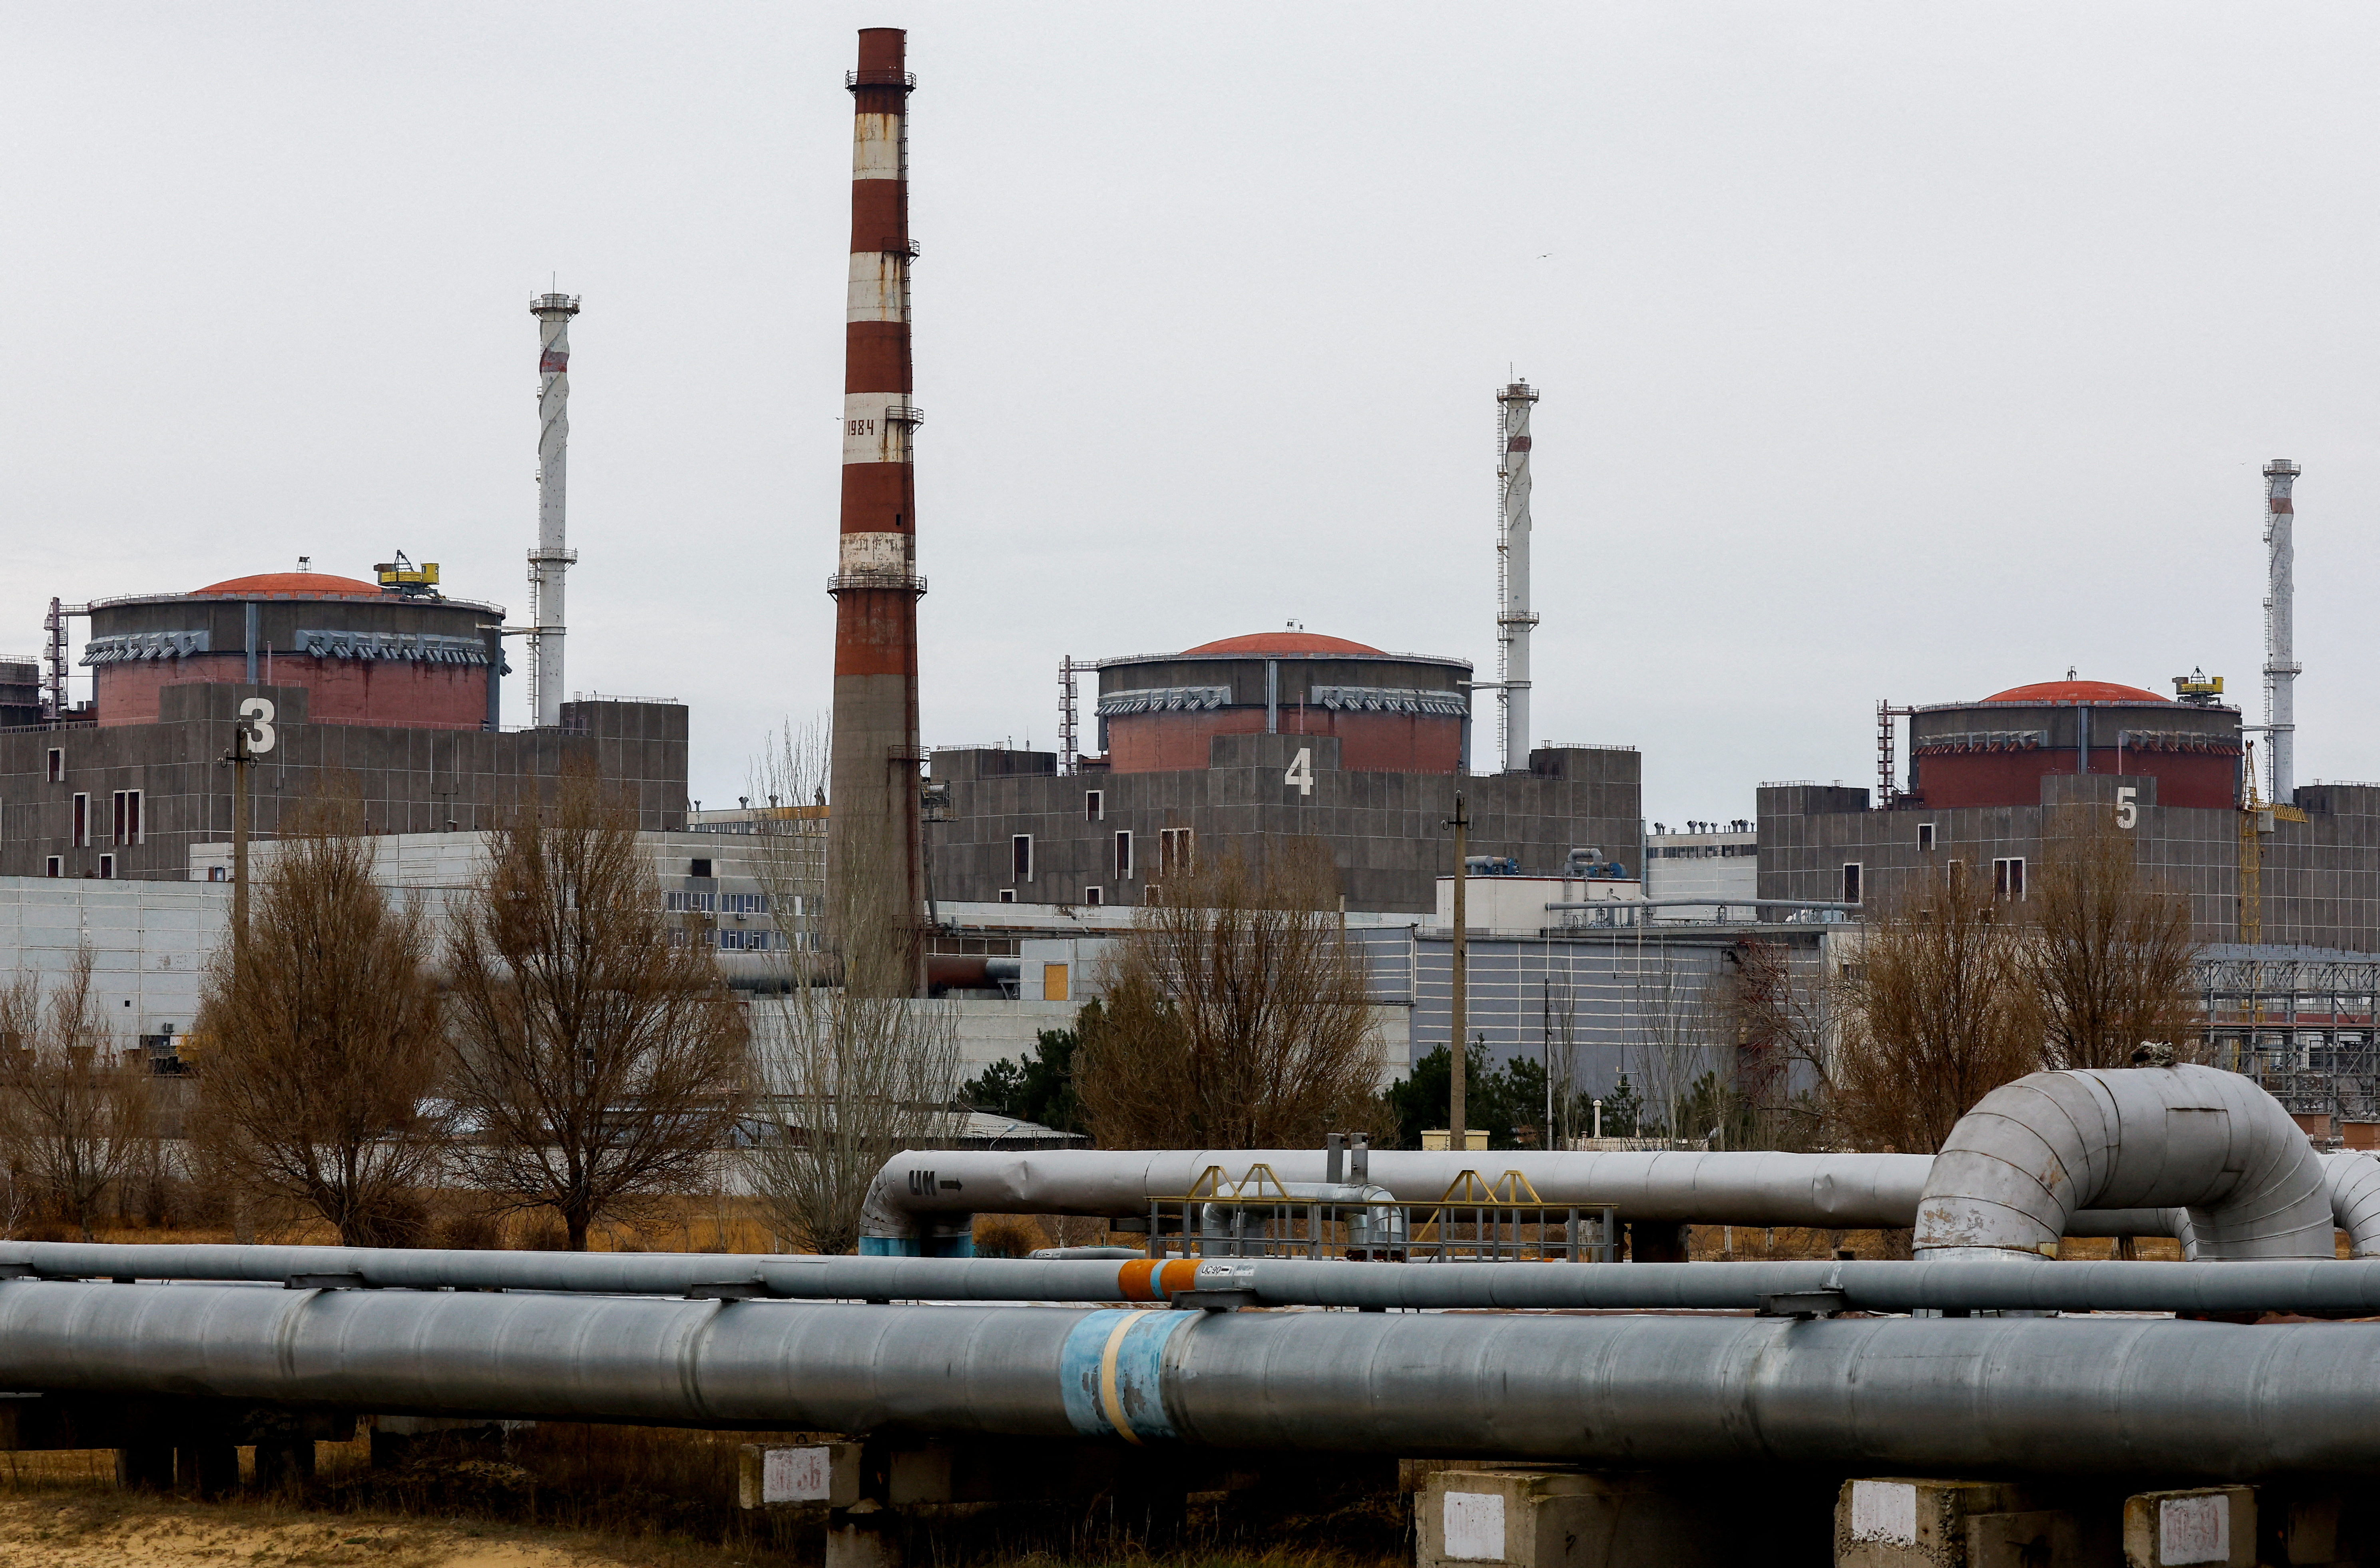 La central nuclear de Zaporizhzhia a las afueras de la ciudad de Enerhodar en la región de Zaporizhzhia, Ucrania controlada por Rusia, 24 de noviembre de 2022. REUTERS/Alexander Ermochenko/archivo